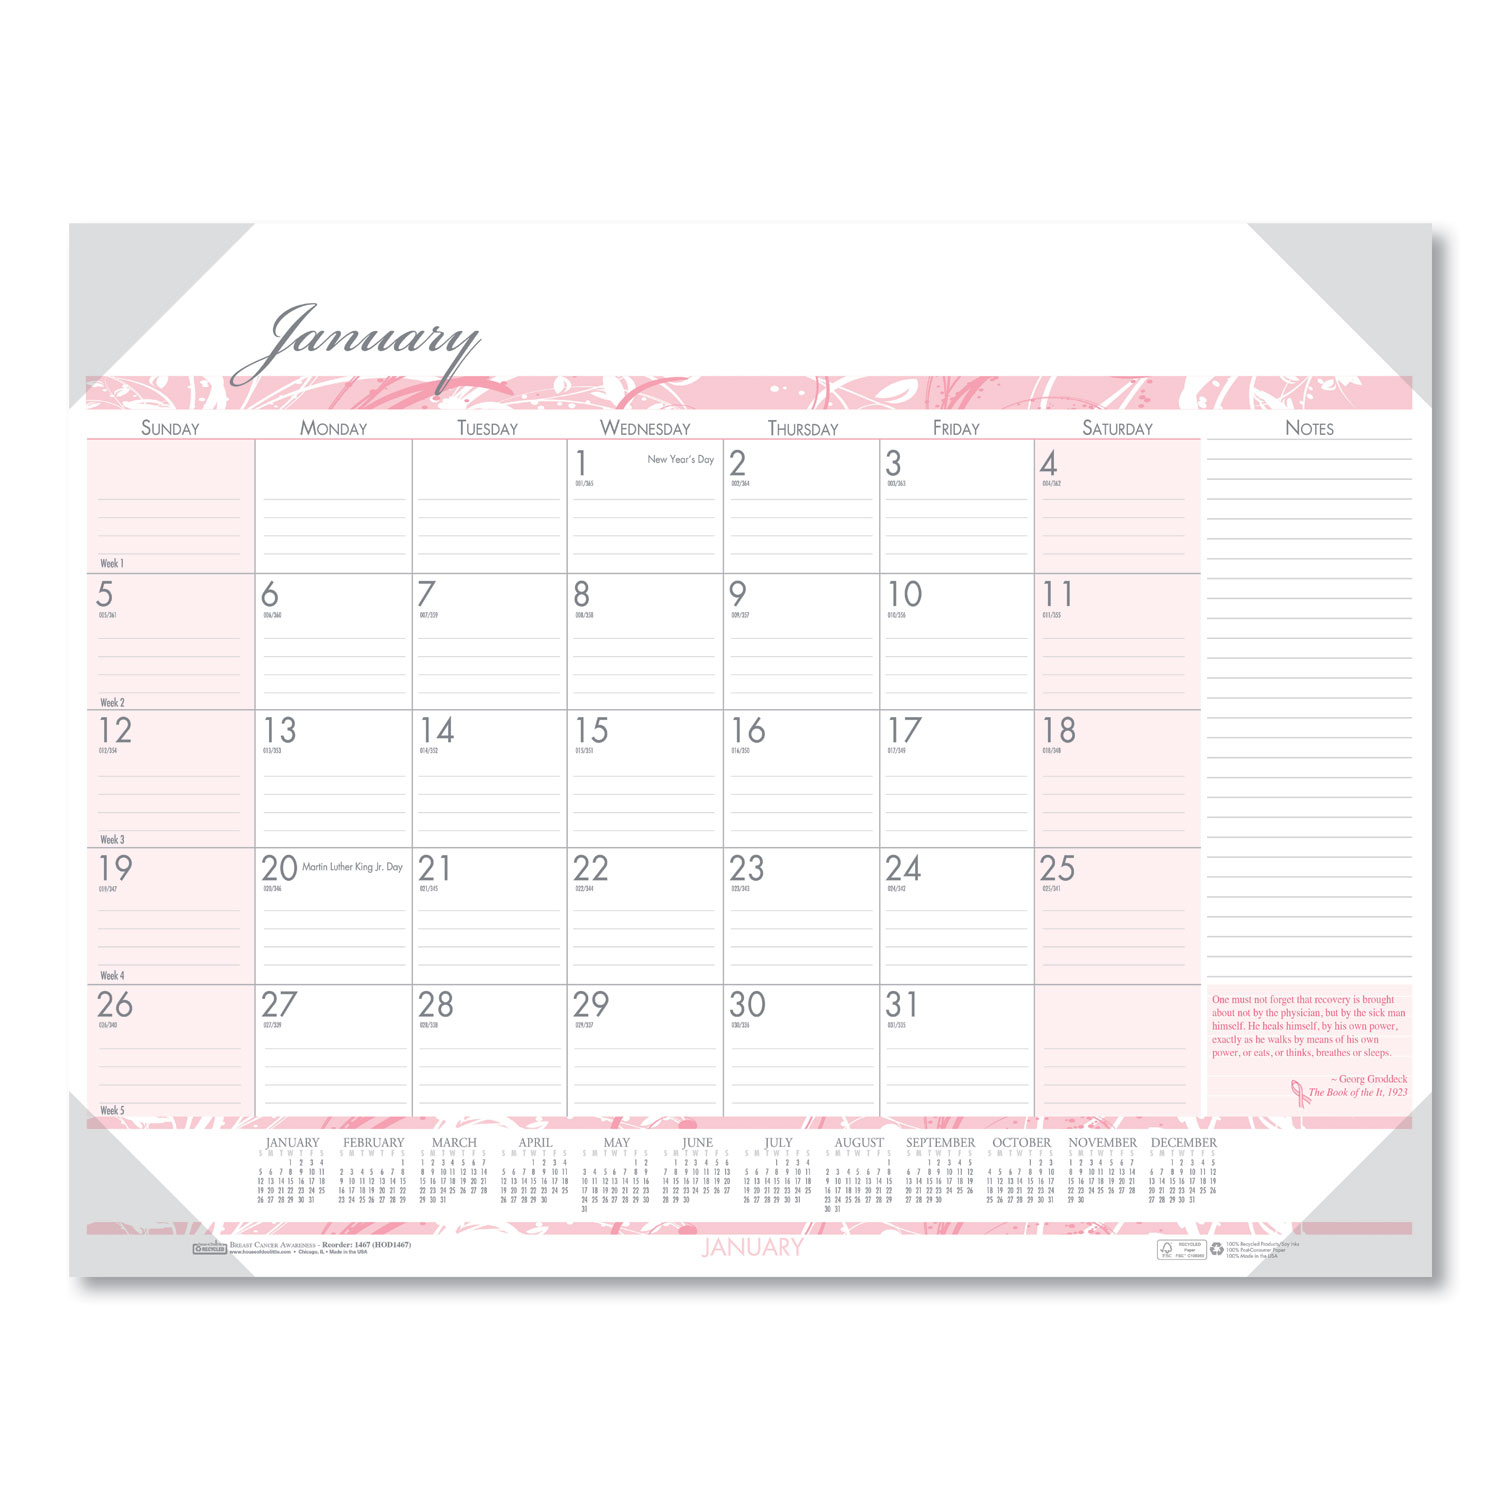 2021 Keyboard Calendar Strips  Calendar Tinning Unified